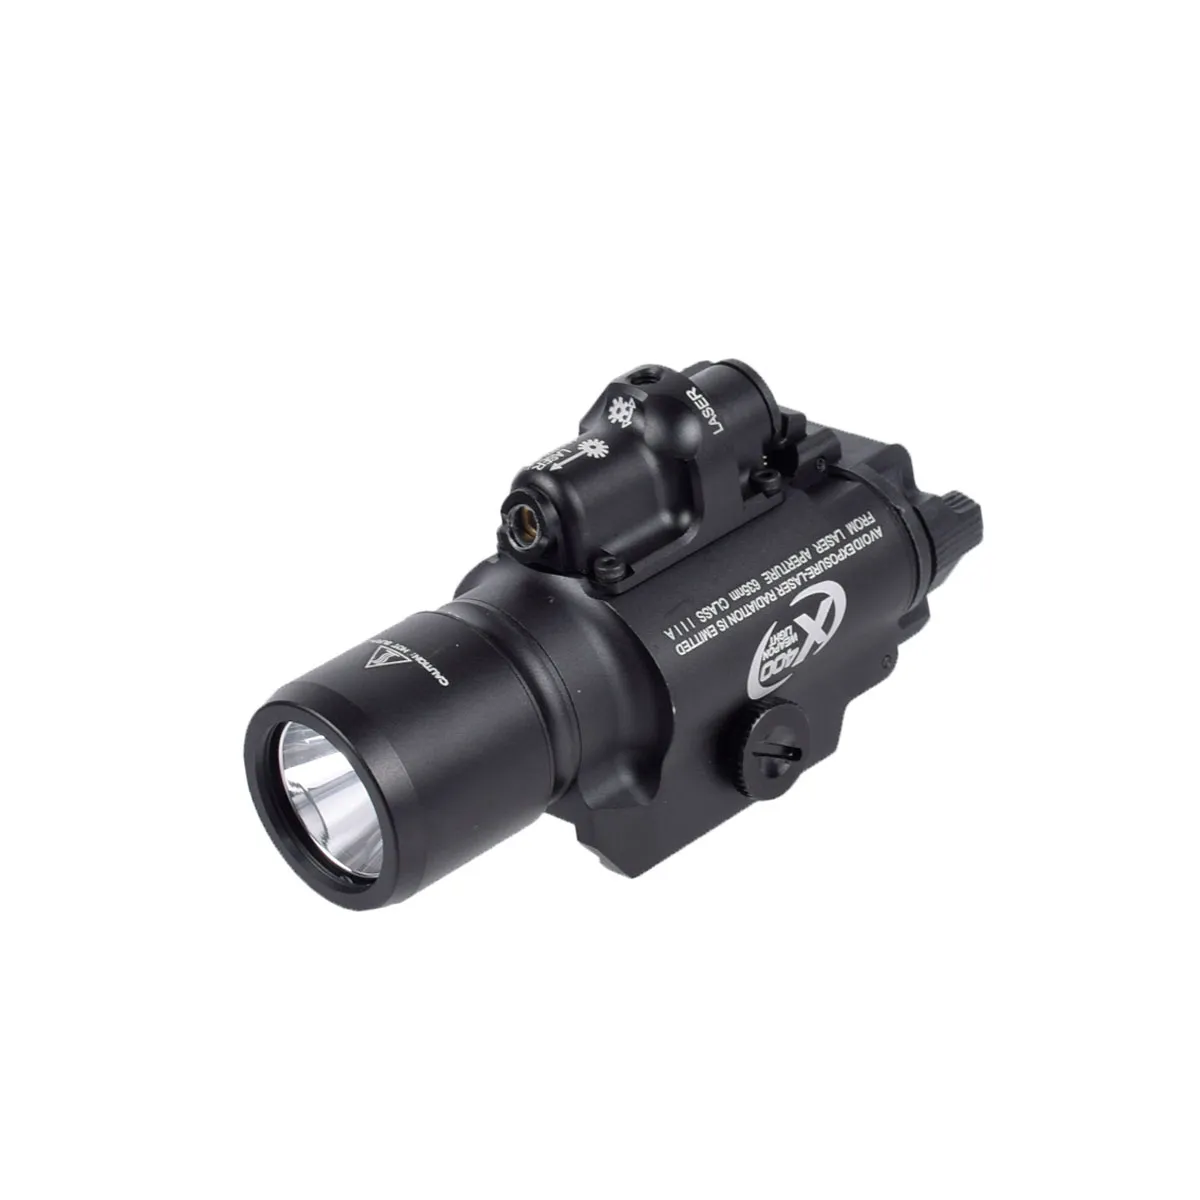 LABBUL SUREFIR X400 Scout Light Combo Лазерный светодиодный фонарик для пикатинских ткацких рельсов